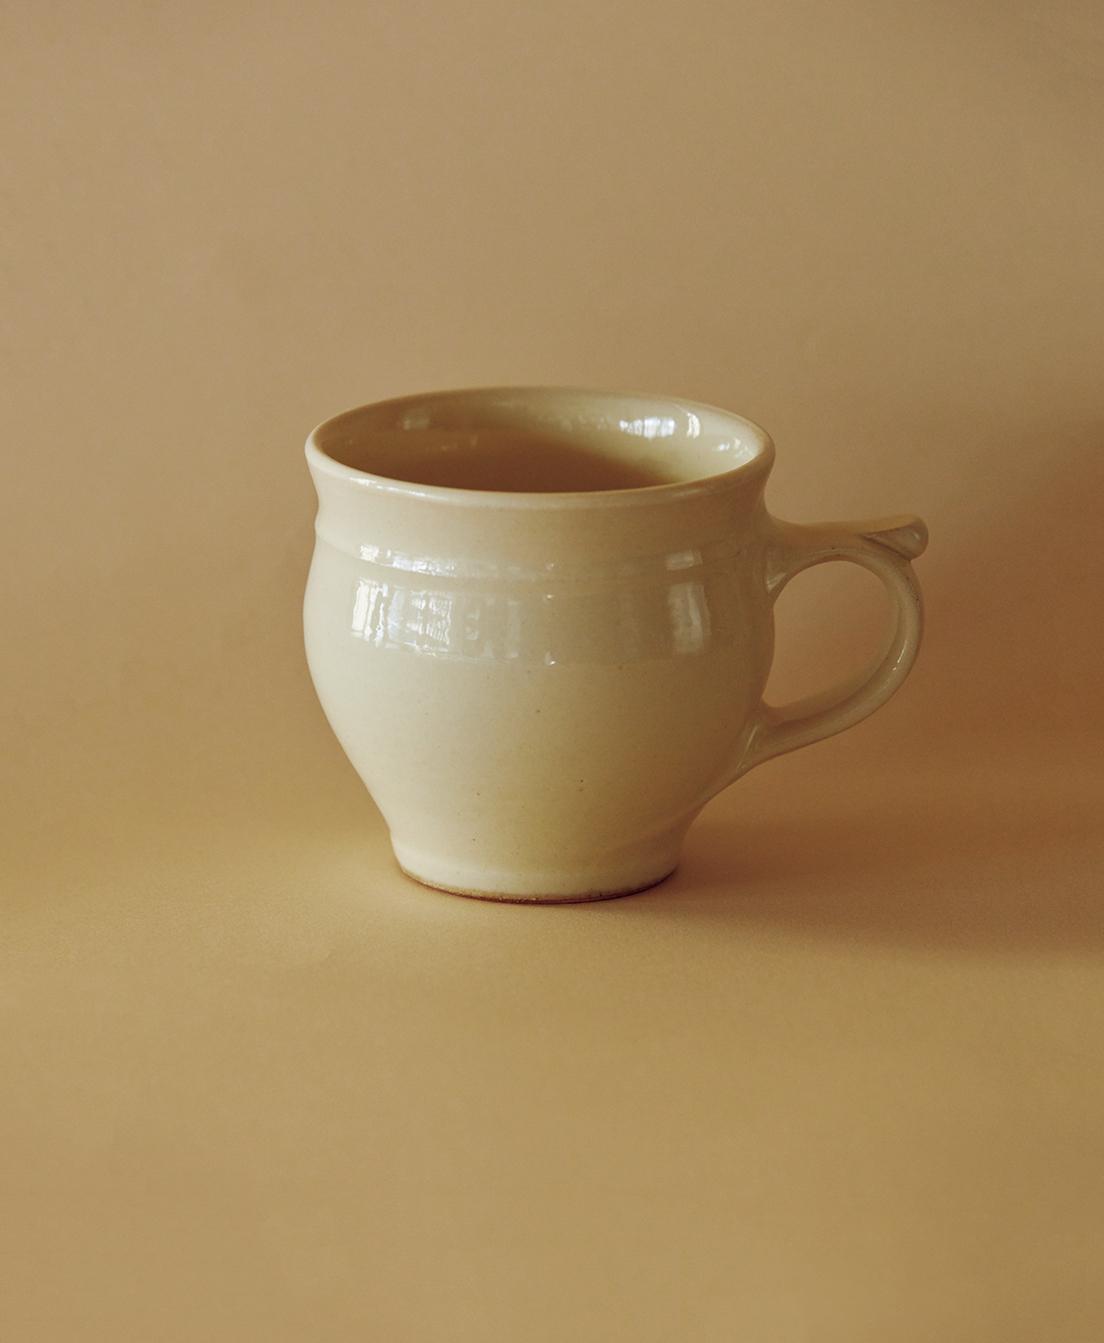 Buying No.37【 出西窯のカップ 】つい手に取りたくなる美しさ。優しい白のモーニングカップ。